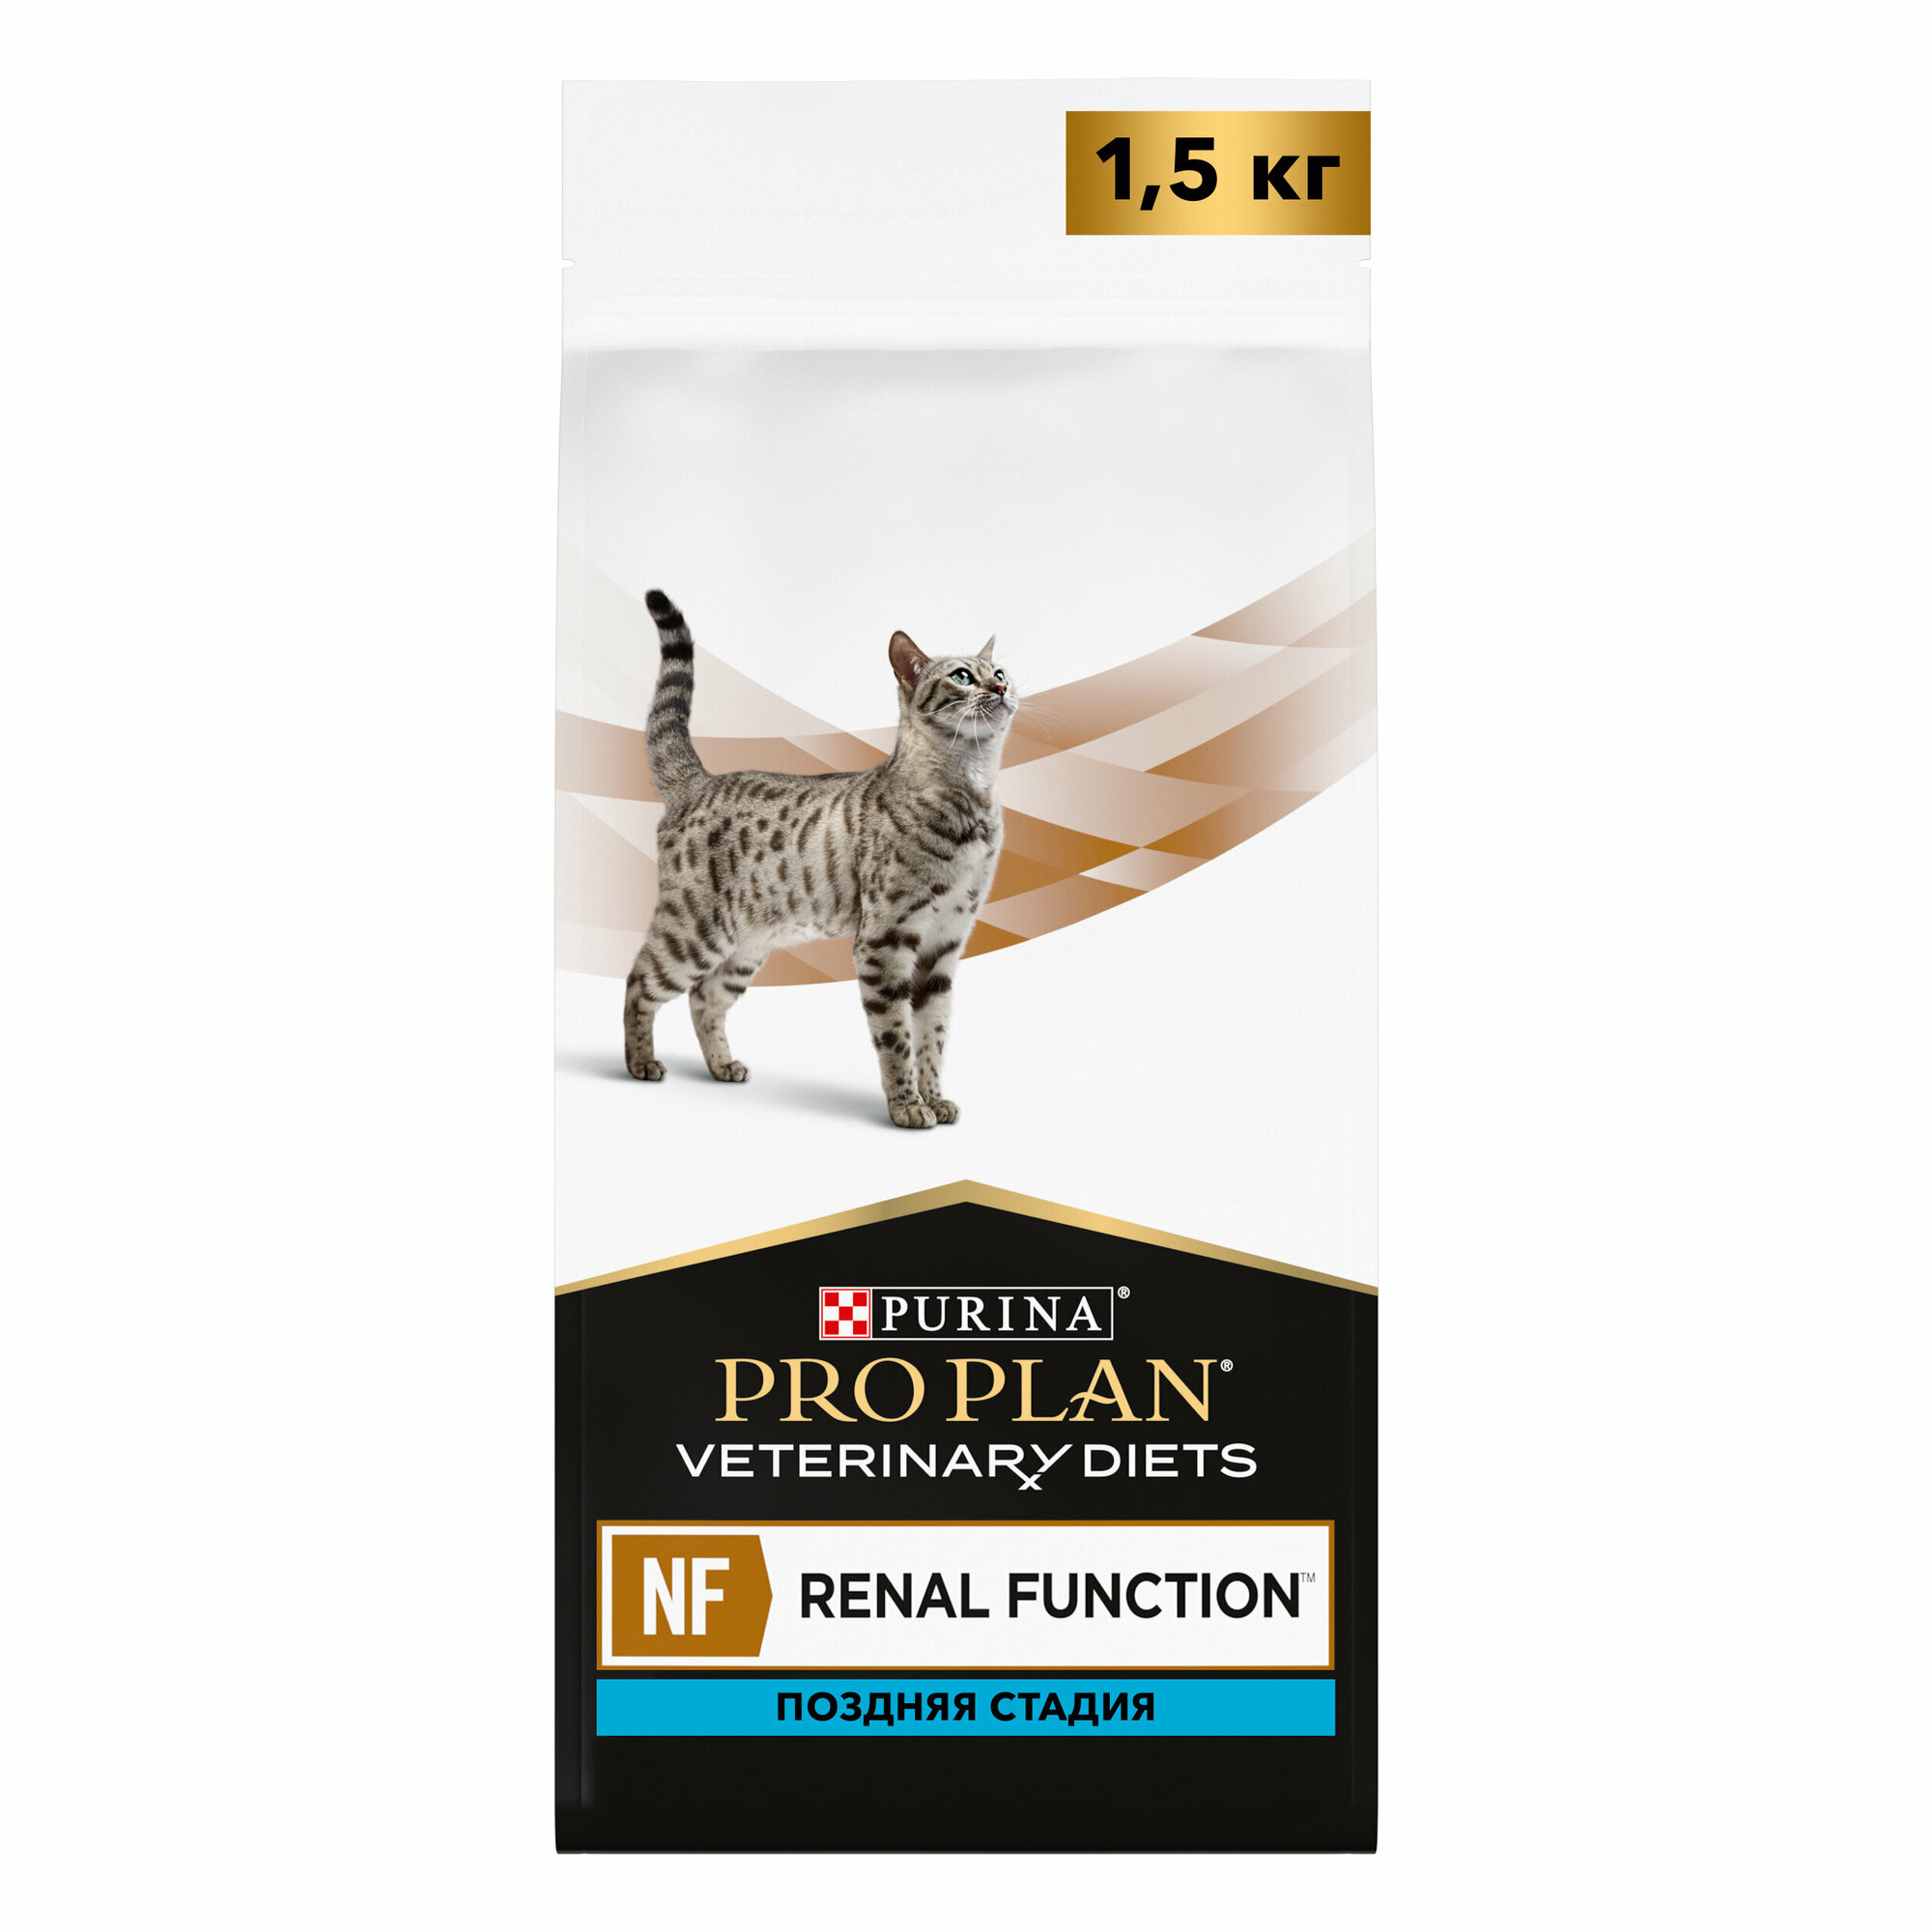 Сухой корм для кошек Pro Plan Veterinary Diets NF при поздней стадии хронической почечной недостаточности 1,5 кг